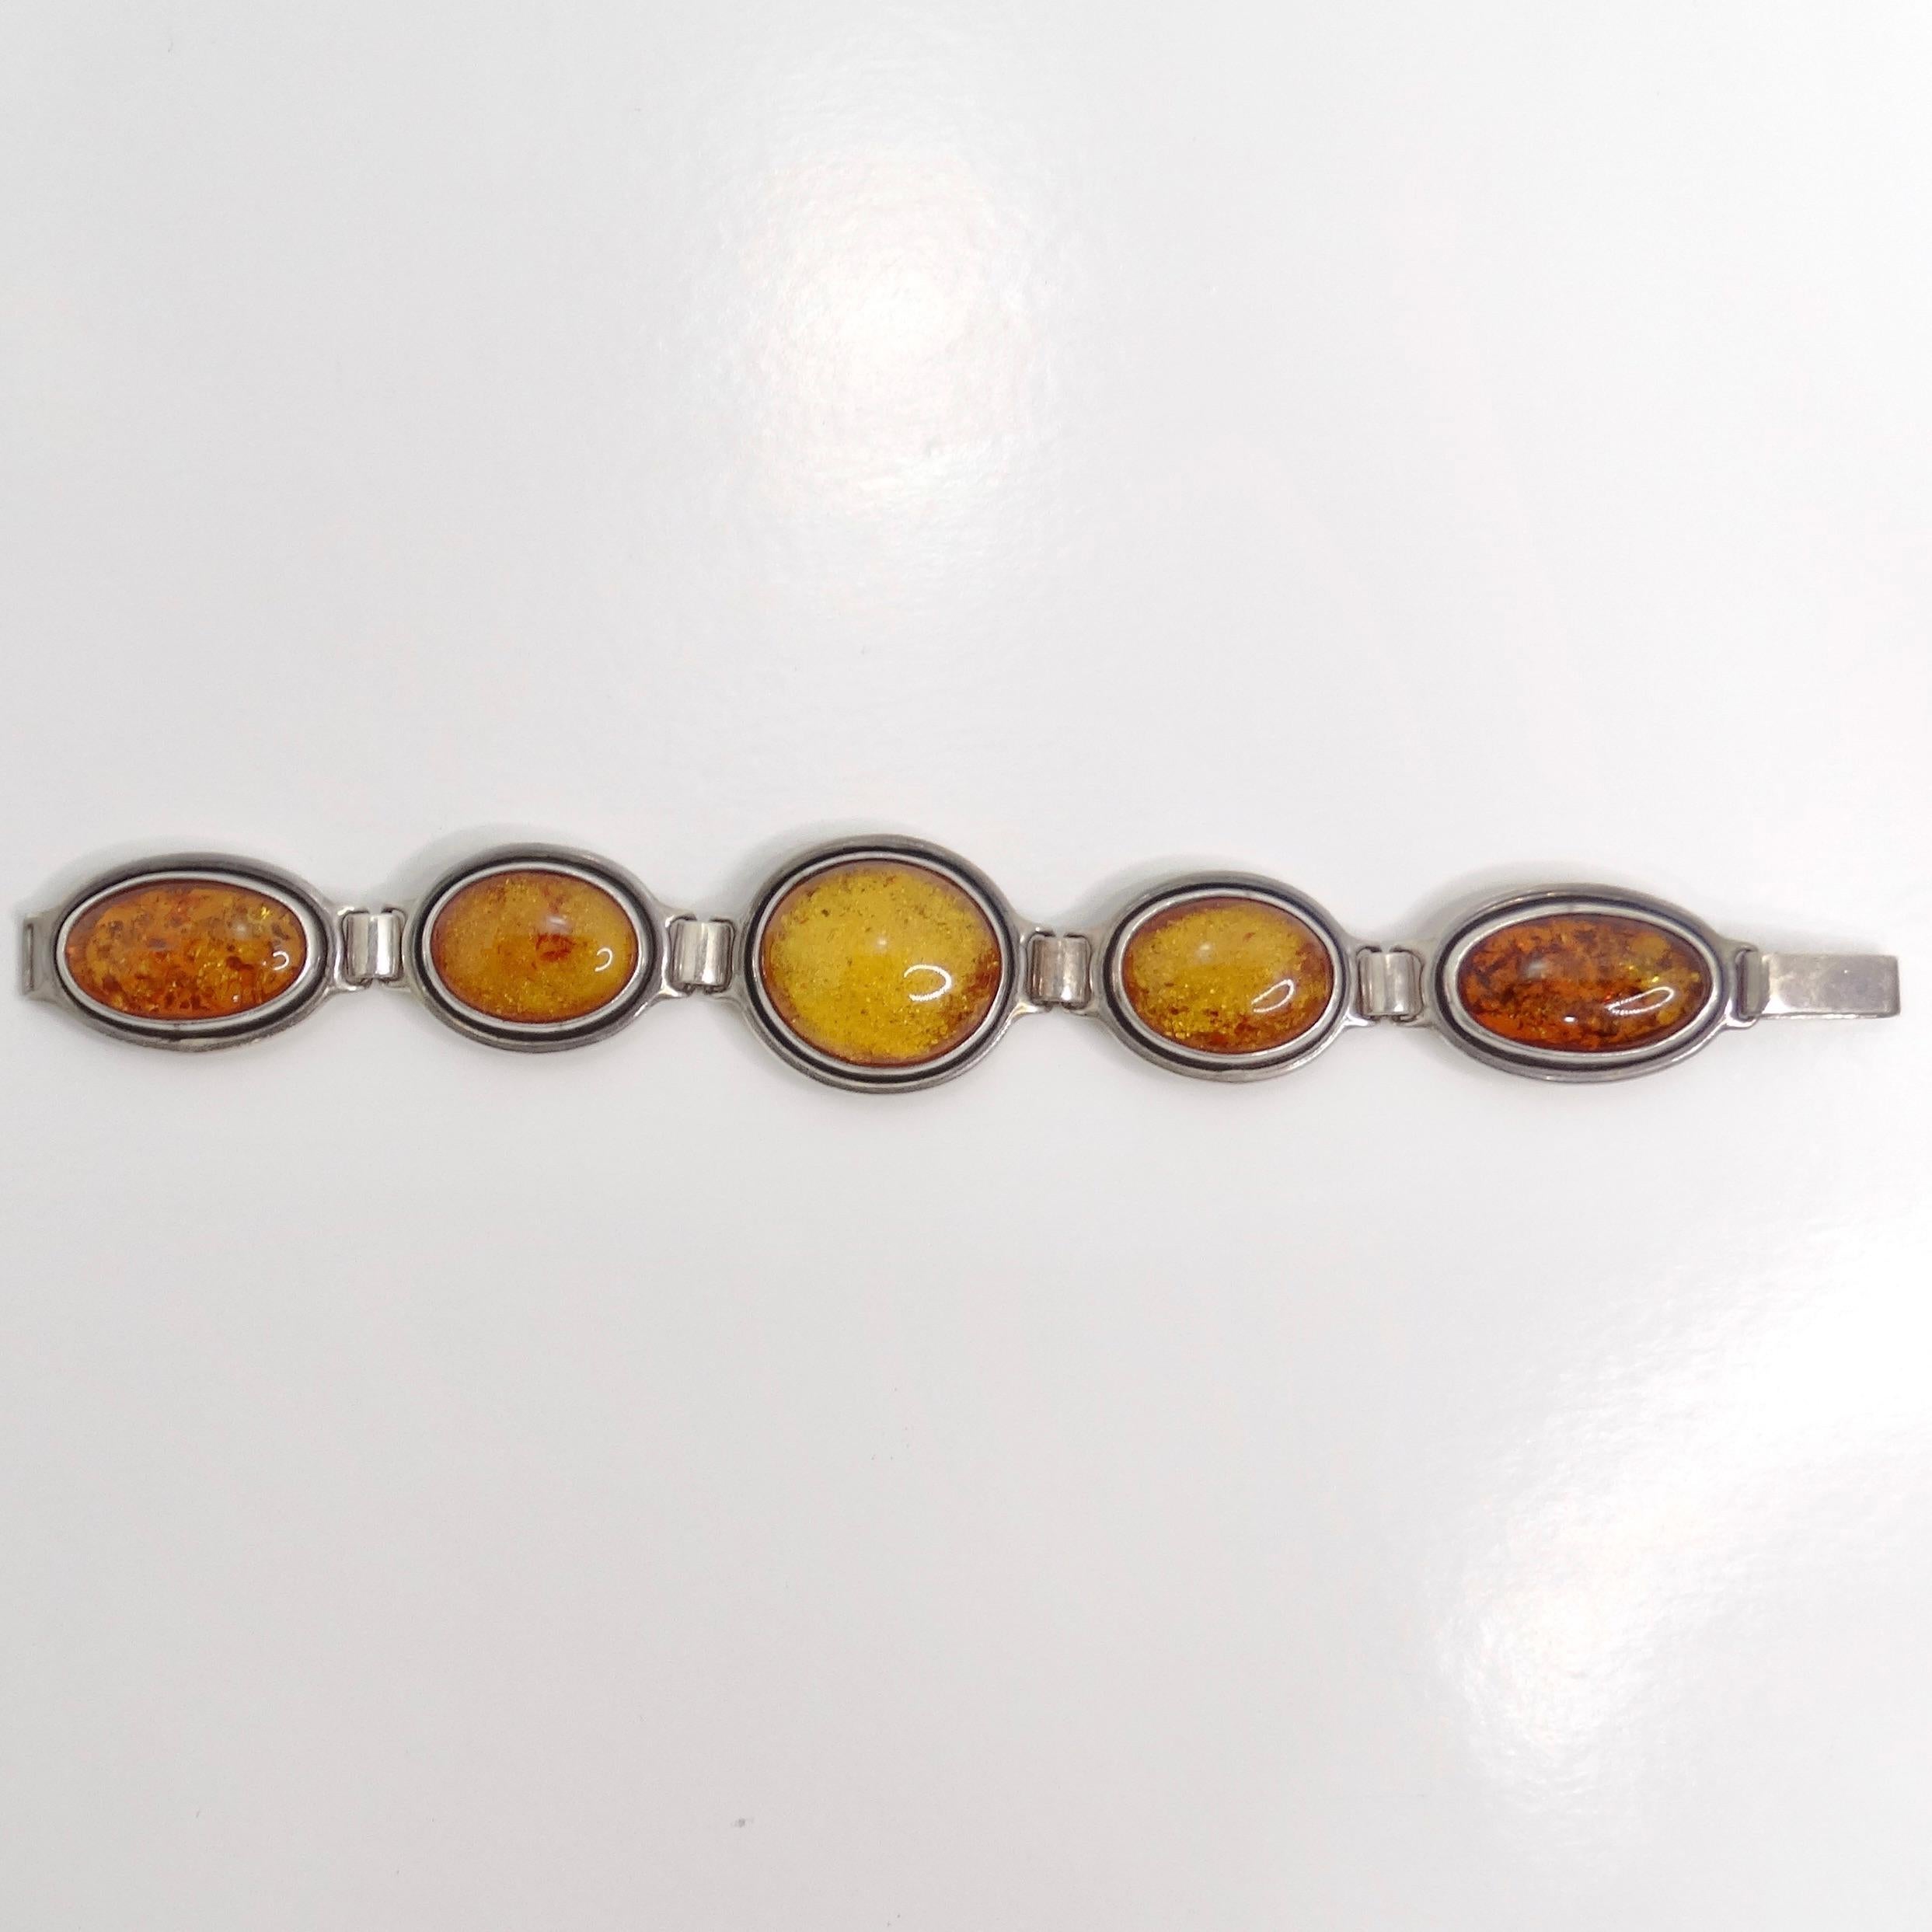 Voici le bracelet en argent et ambre des années 1970, une pièce vintage étonnante qui allie des couleurs vibrantes à un travail artisanal élégant. Ce magnifique bracelet est composé de cinq pierres d'ambre orange, chacune étant sertie de manière